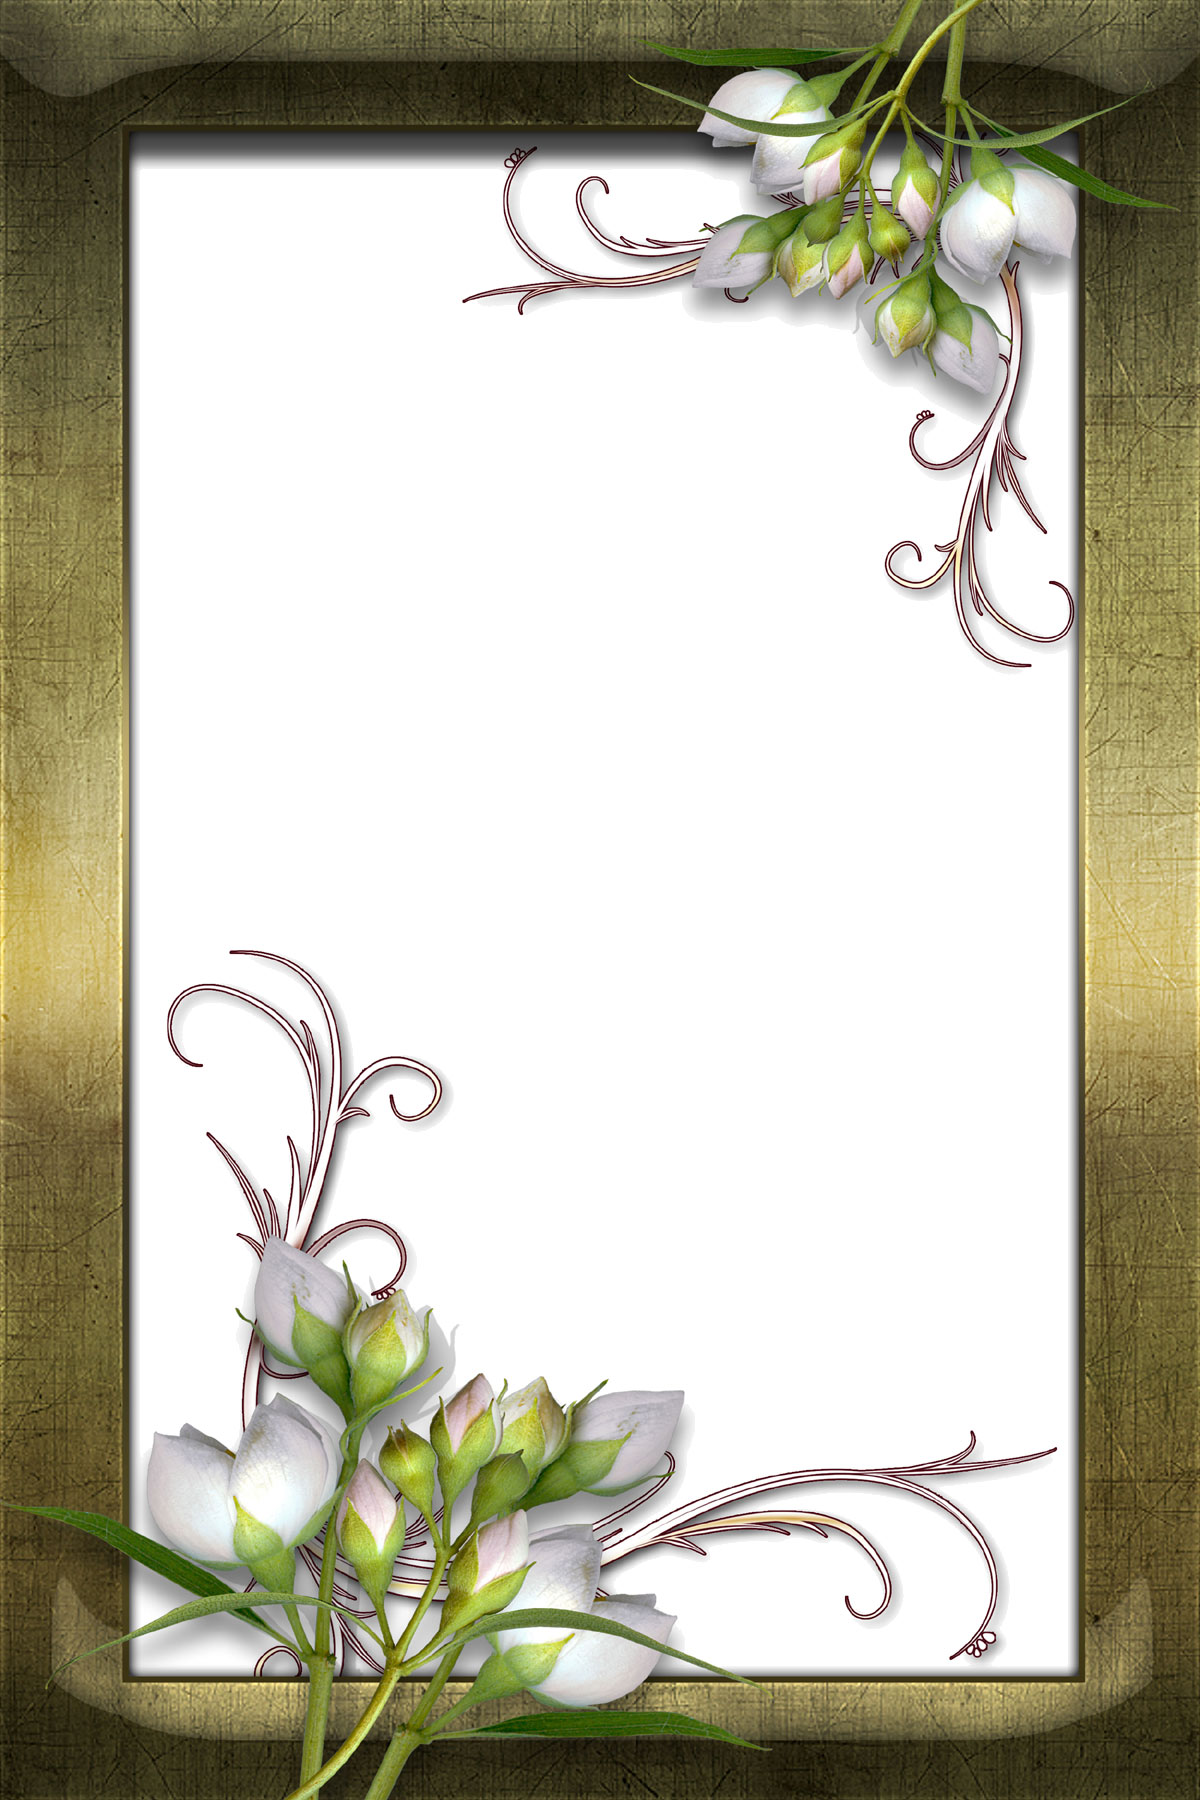 リアルな花のイラスト フリー素材 フレーム枠no 1440 白 木額縁 フレーム